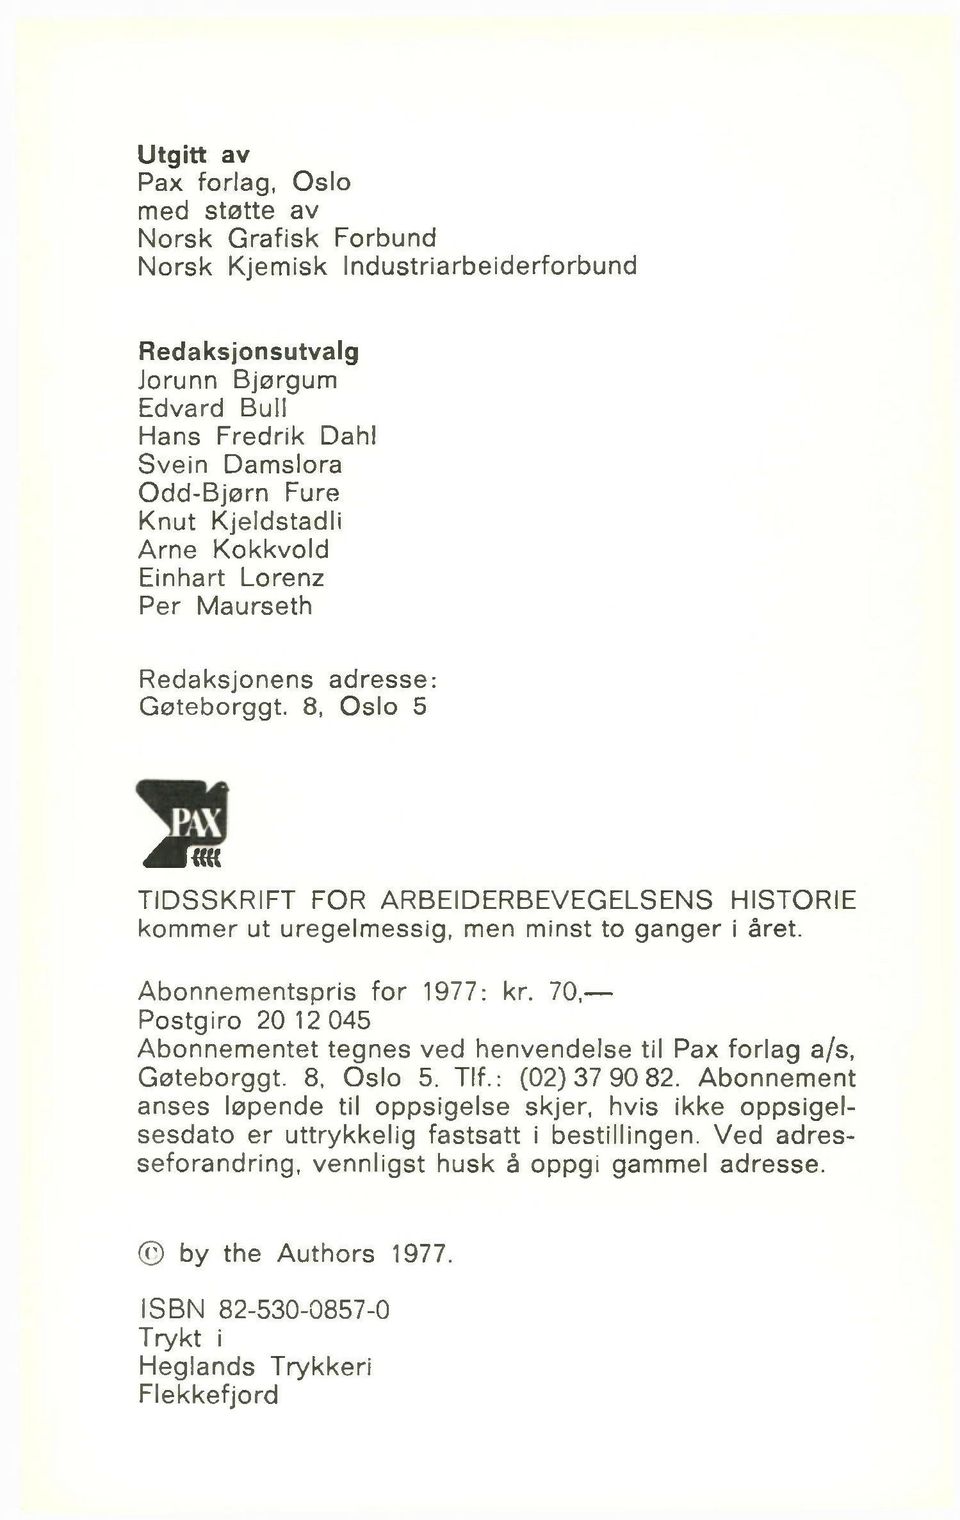 Abonnementspris for 1977: kr. 70, Postgiro 20 12 045 Abonnementet tegnes ved henvendelse til Pax forlag a/s, Gøteborggt. 8, Oslo 5. Tlf.: (02)37 90 82.